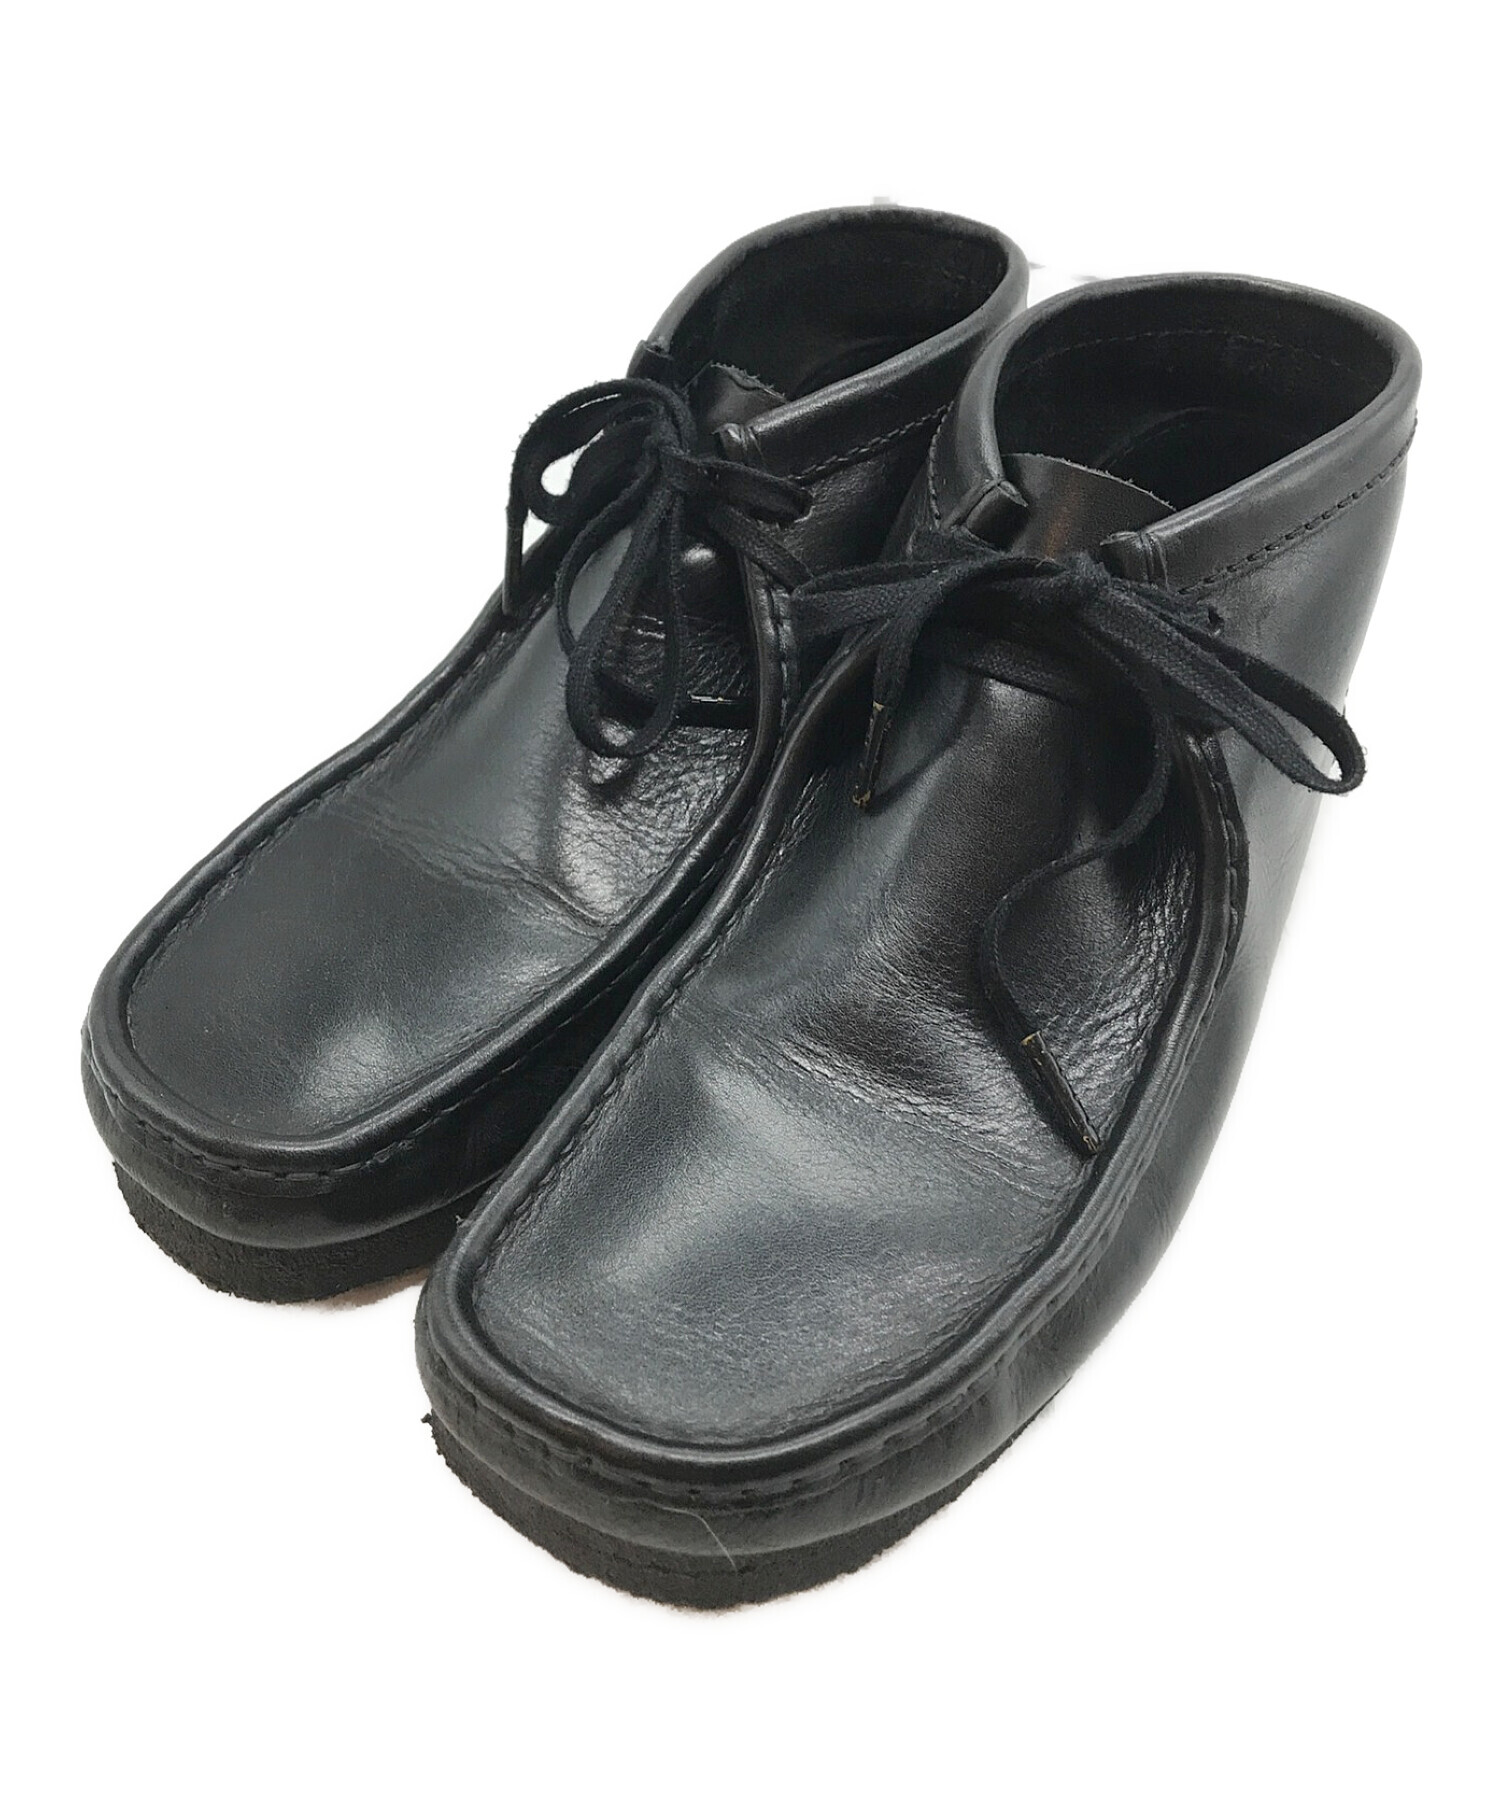 CLARKS (クラークス) Wallabee Boot Leather/ワラビーブーツレザー ブラック サイズ:UK 9 1/2